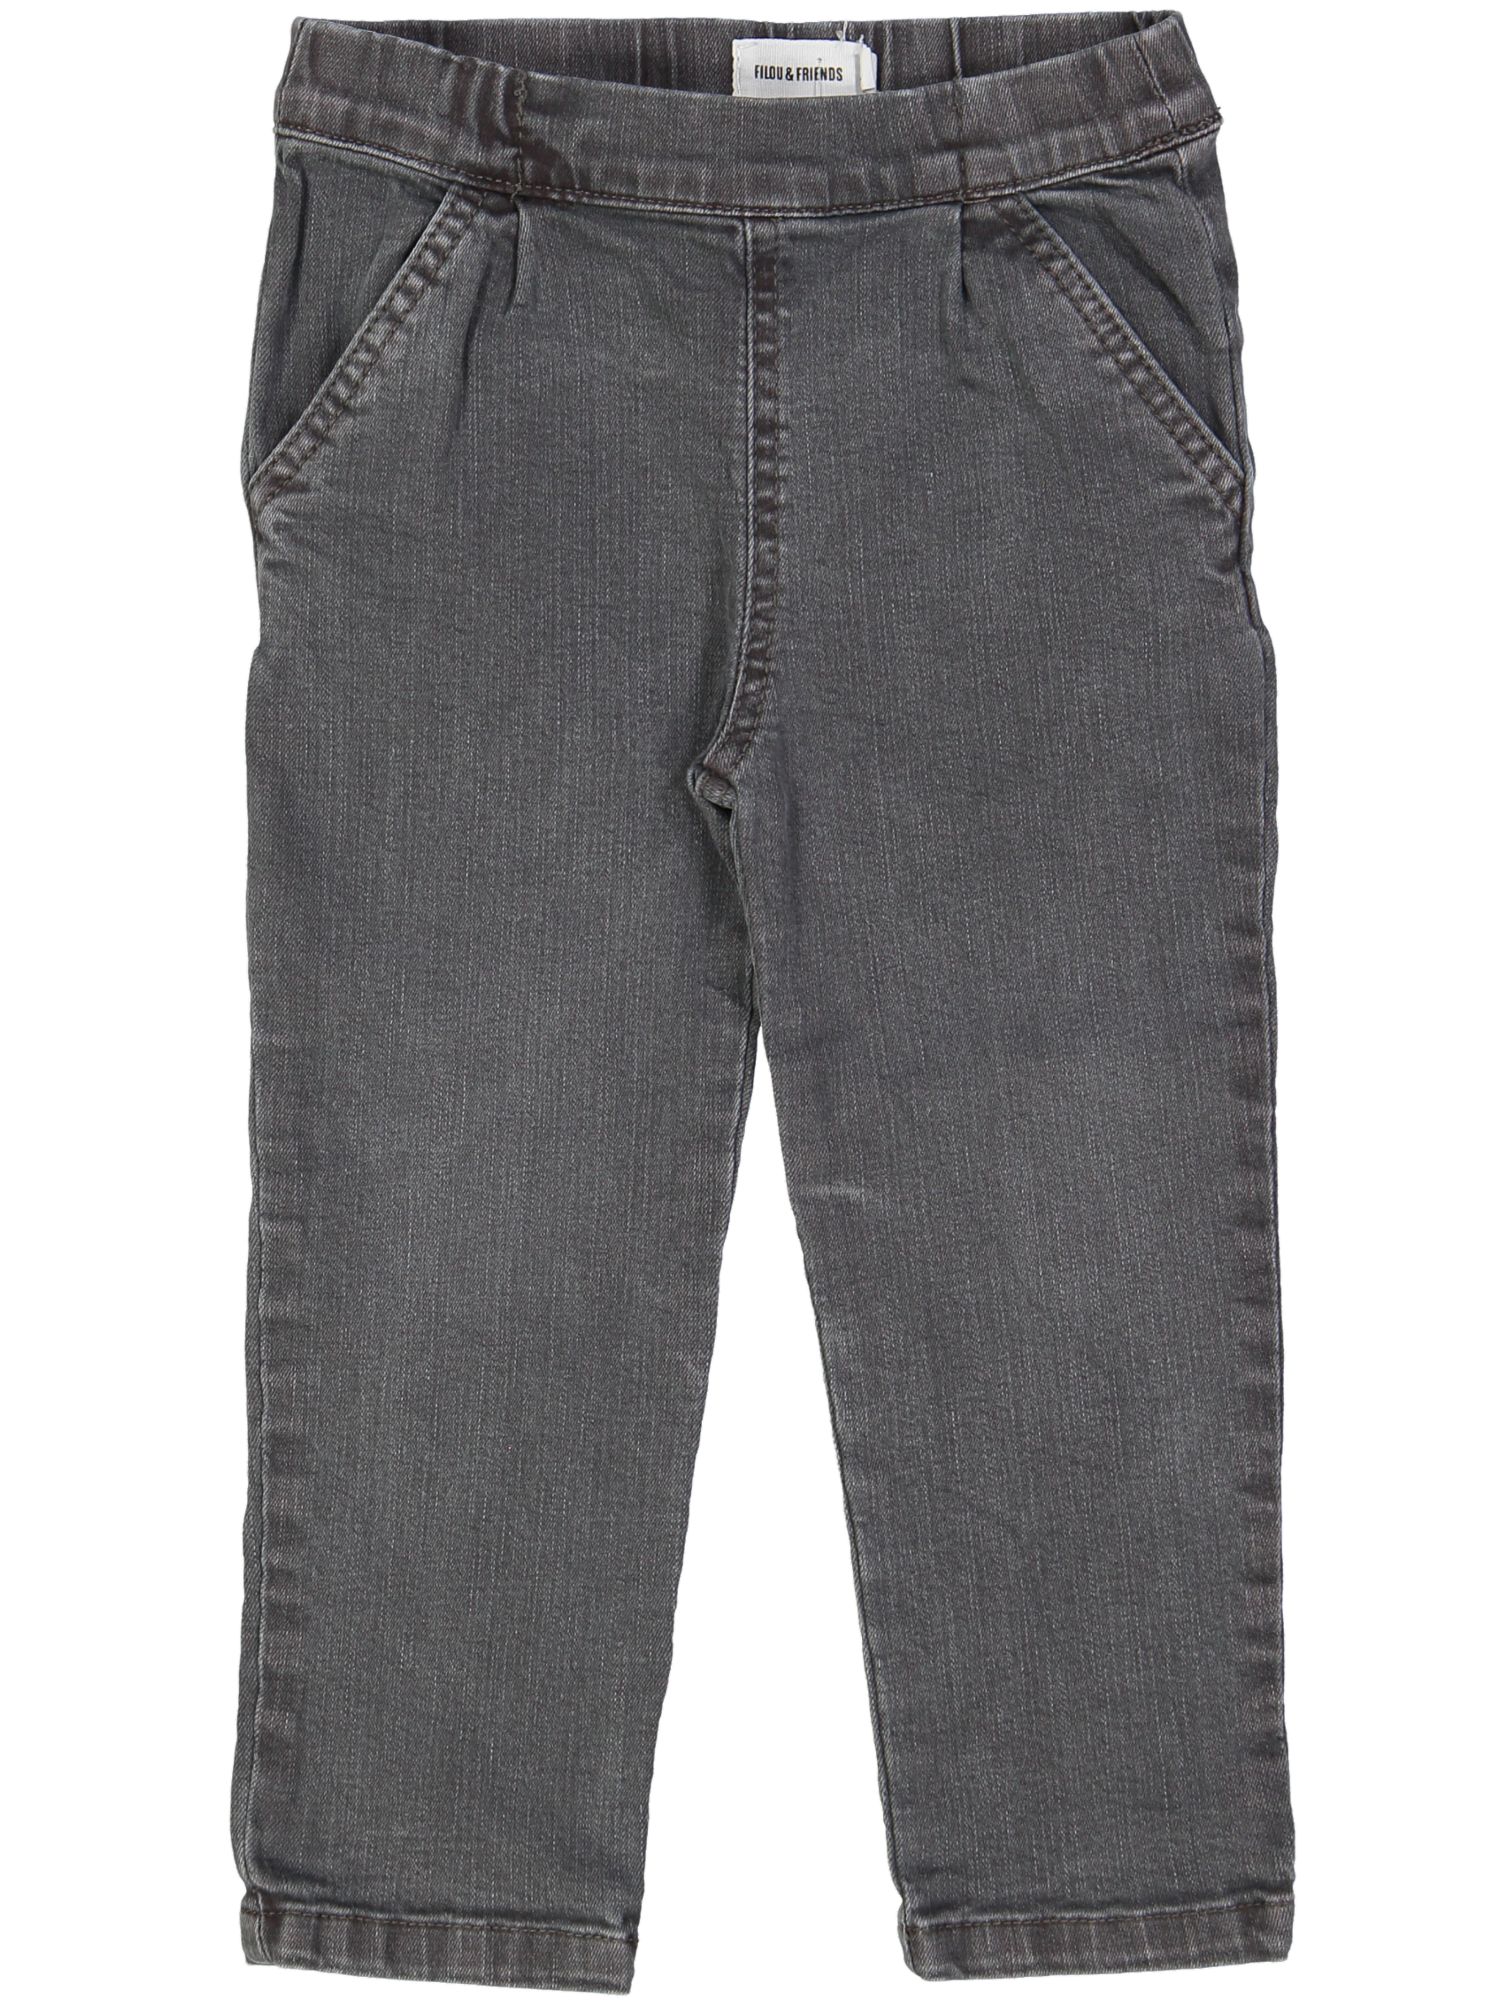 lange broek grijs jeans 02j .